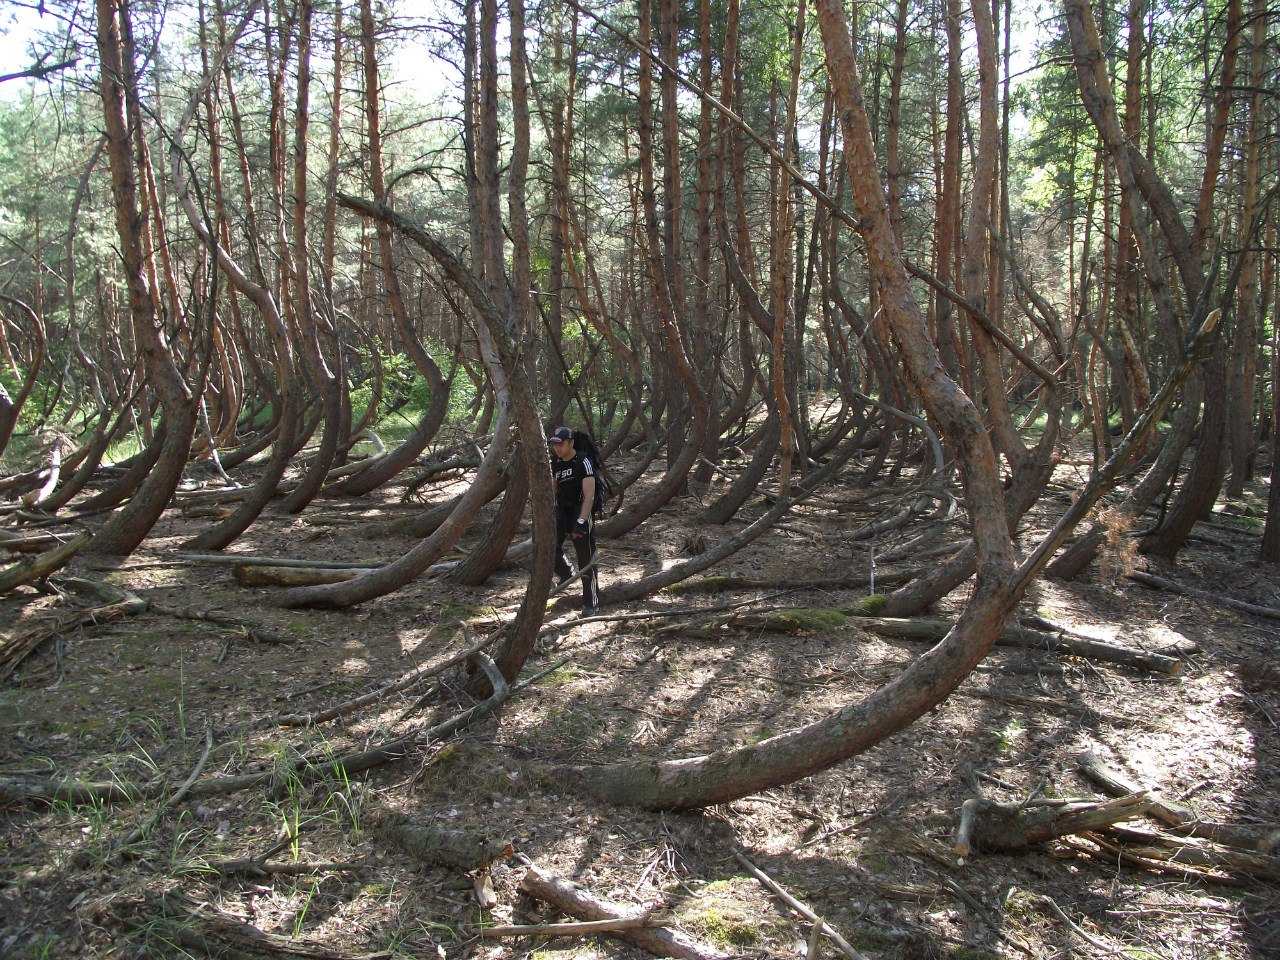 Исследователь аномальных явлений Дмитрий Савва побывал в “пьяном” лесу. Это загадочное место в Рязанской области, где растут странно изогнутые деревья.